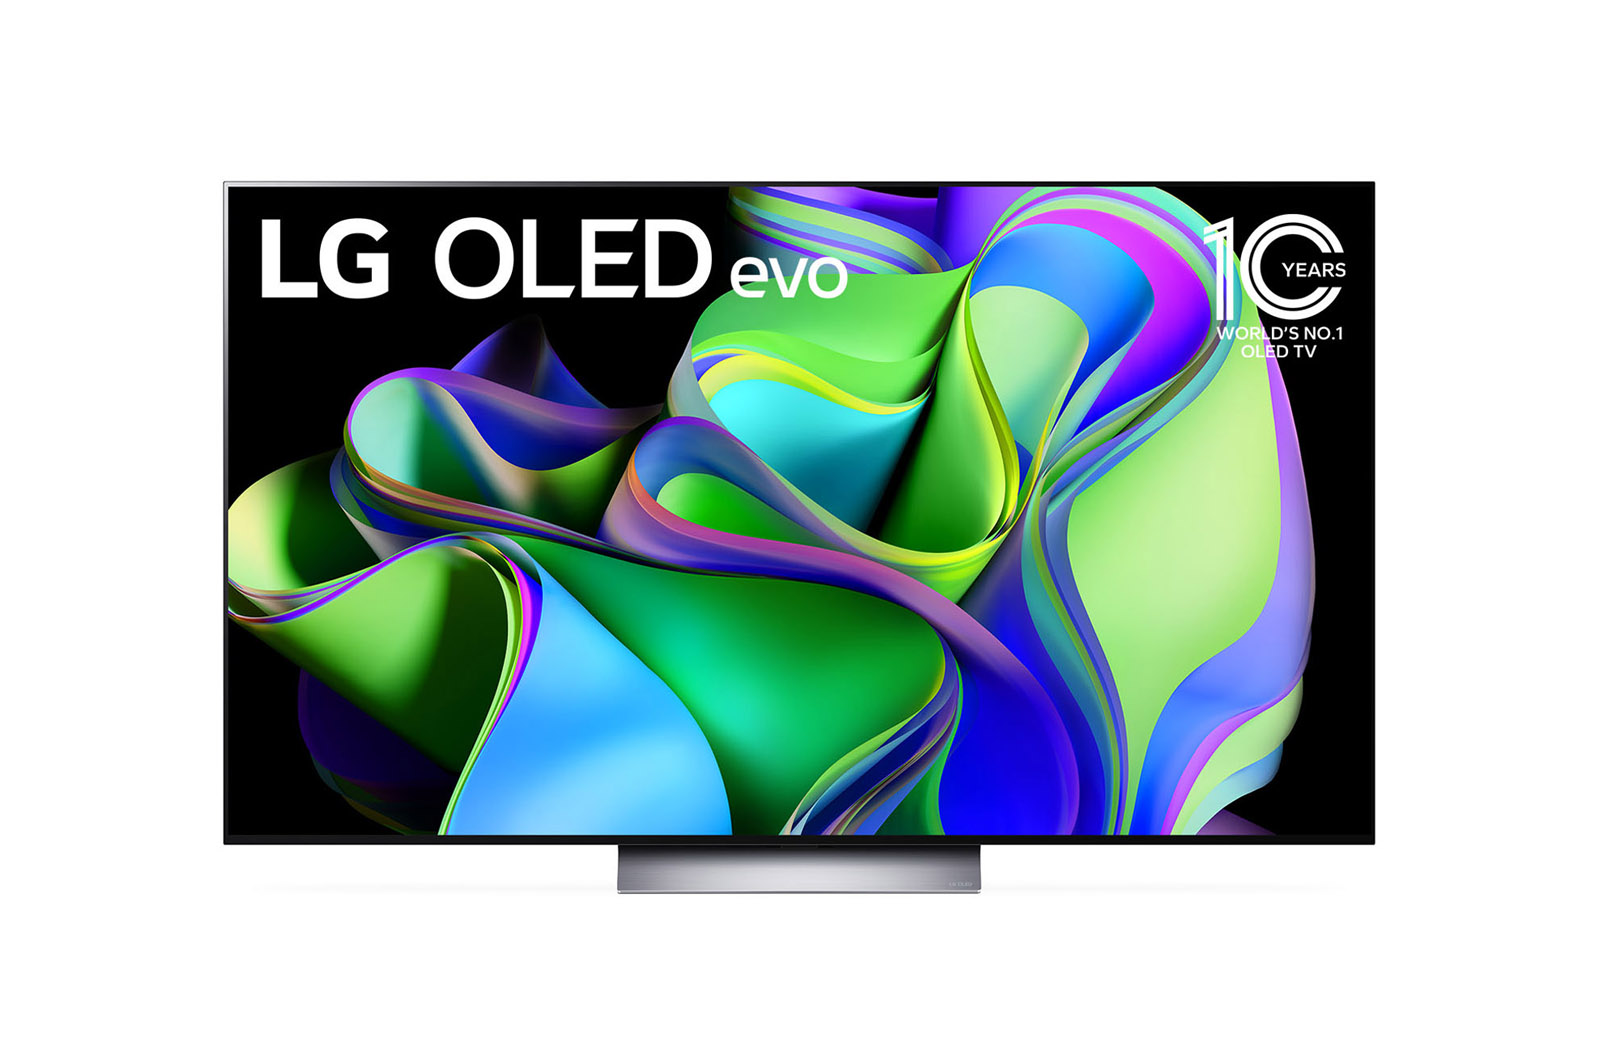 LG 65V型 有機EL テレビ OLED65B6P 4K 外付けHDD裏番組録10万円は無理でしょうか